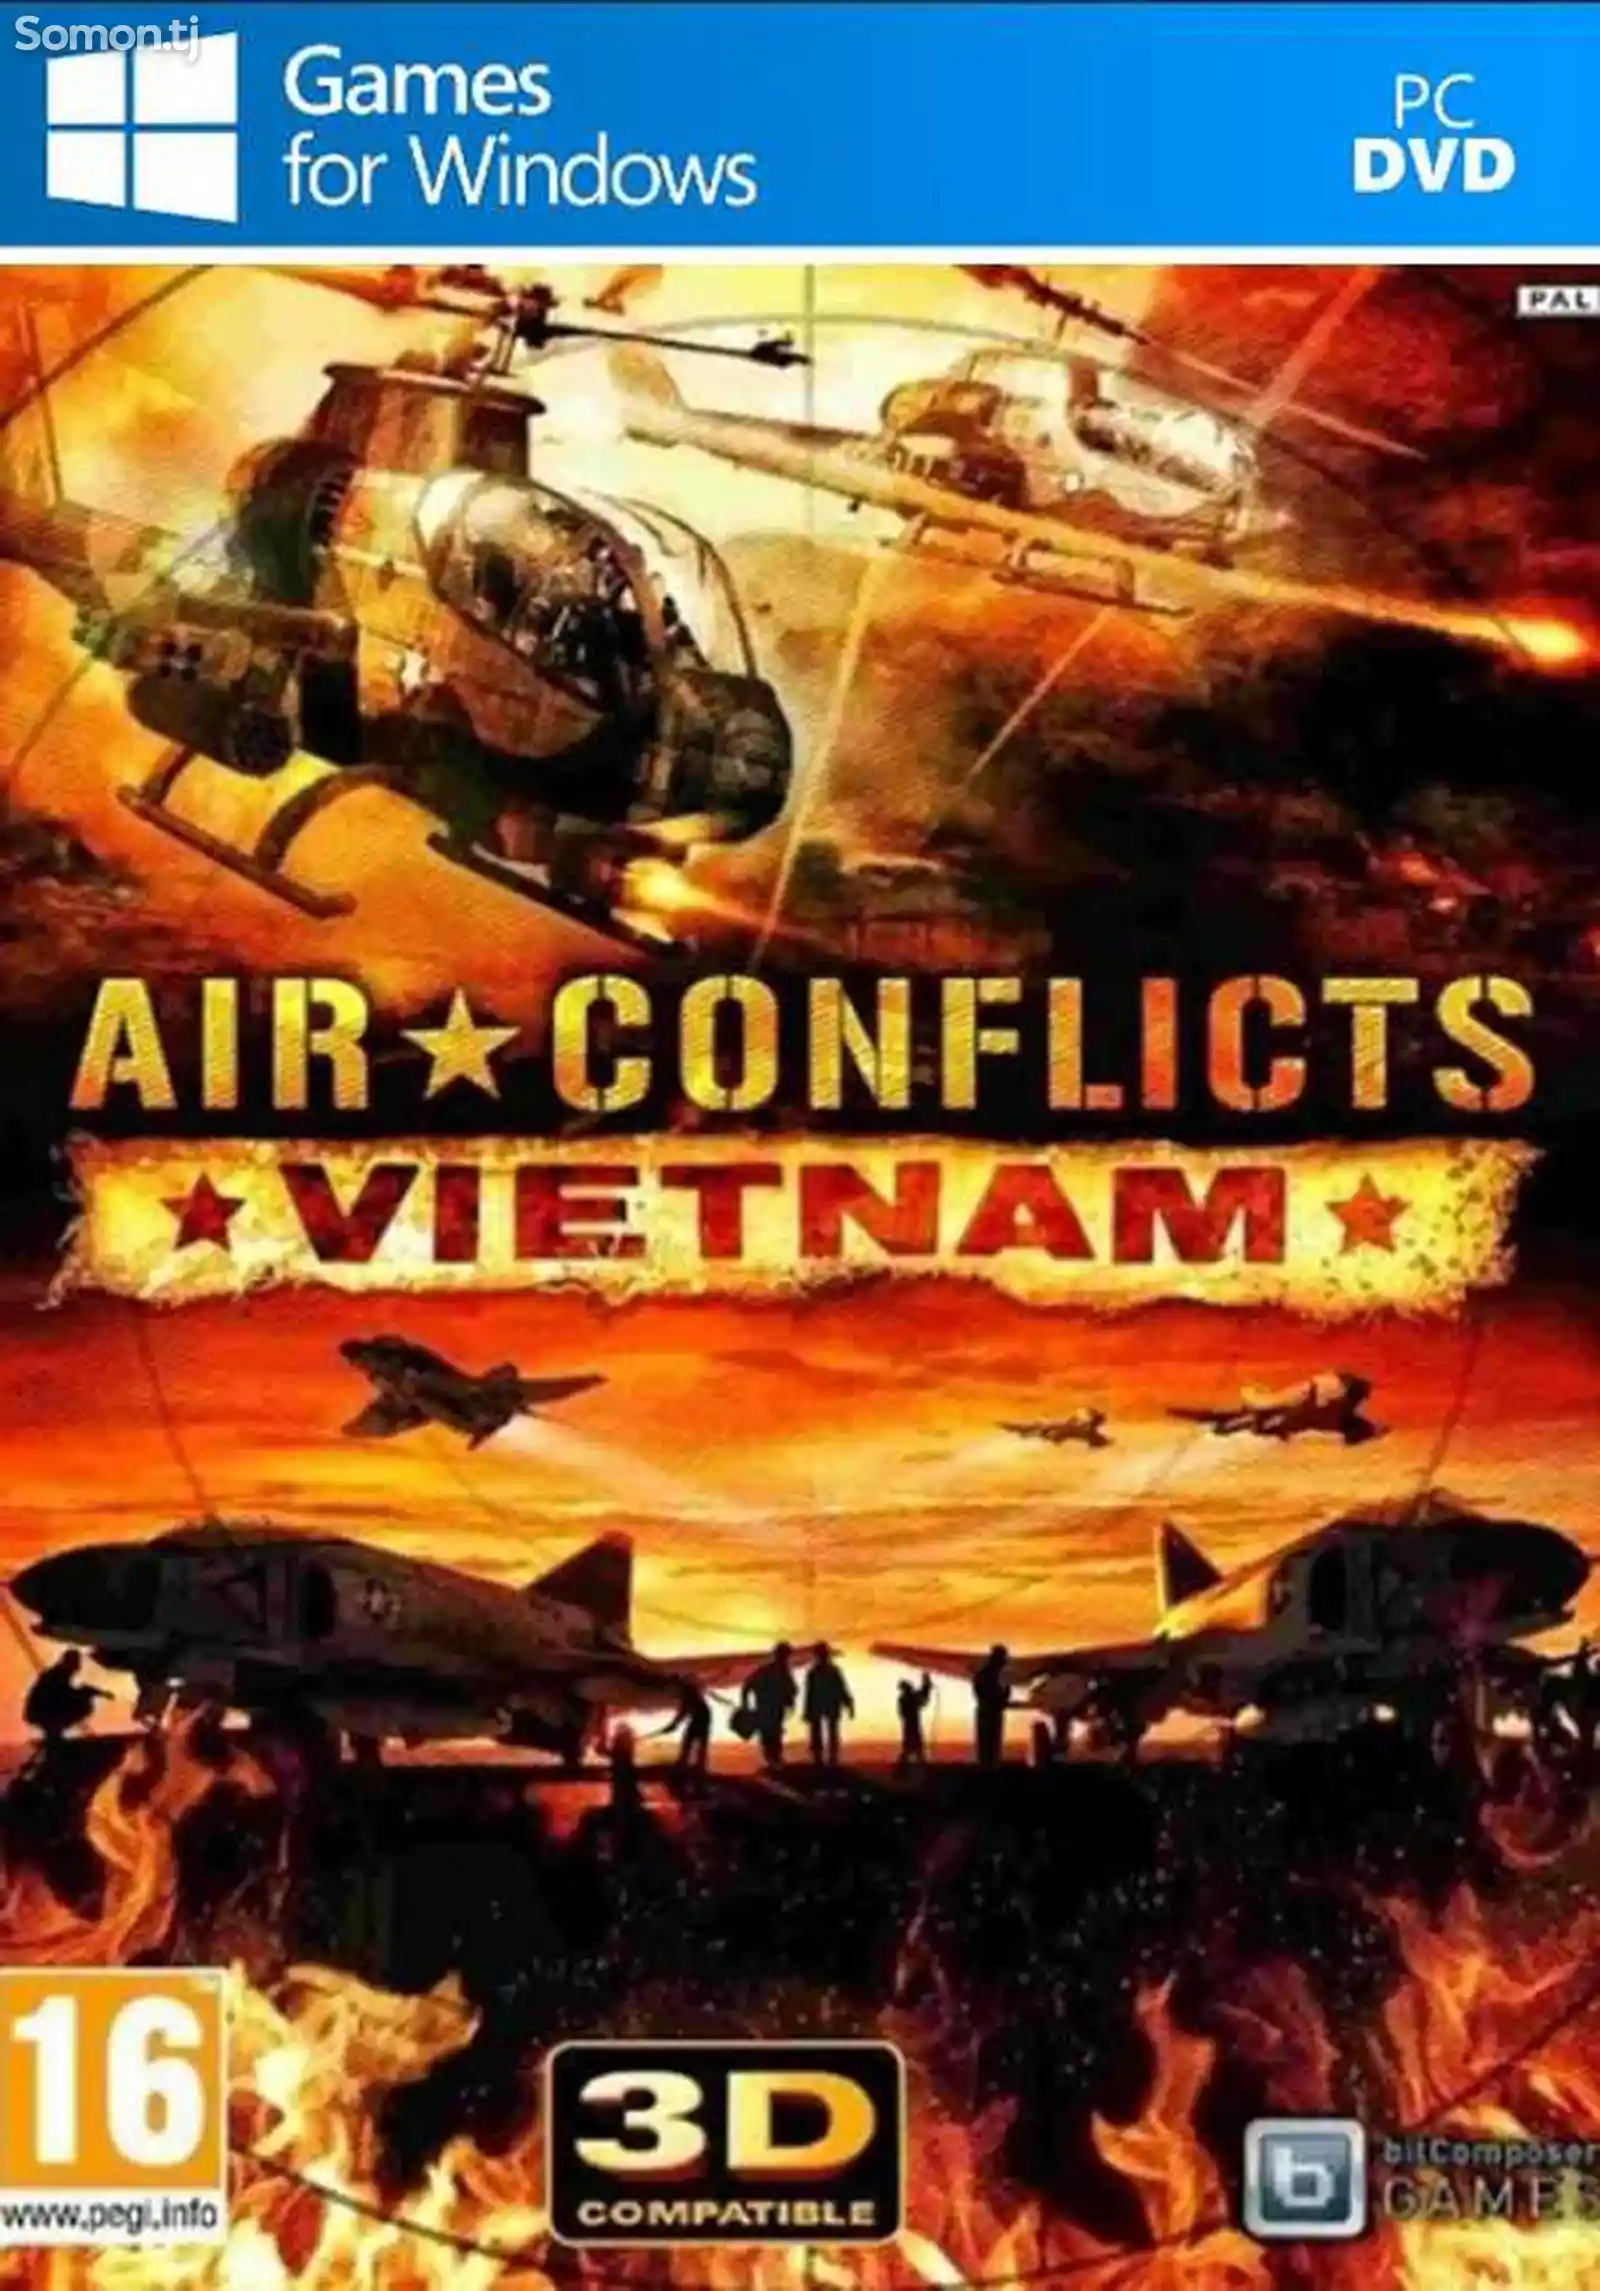 Игра Air conflicts vietnam для компьютера-пк-pc-1